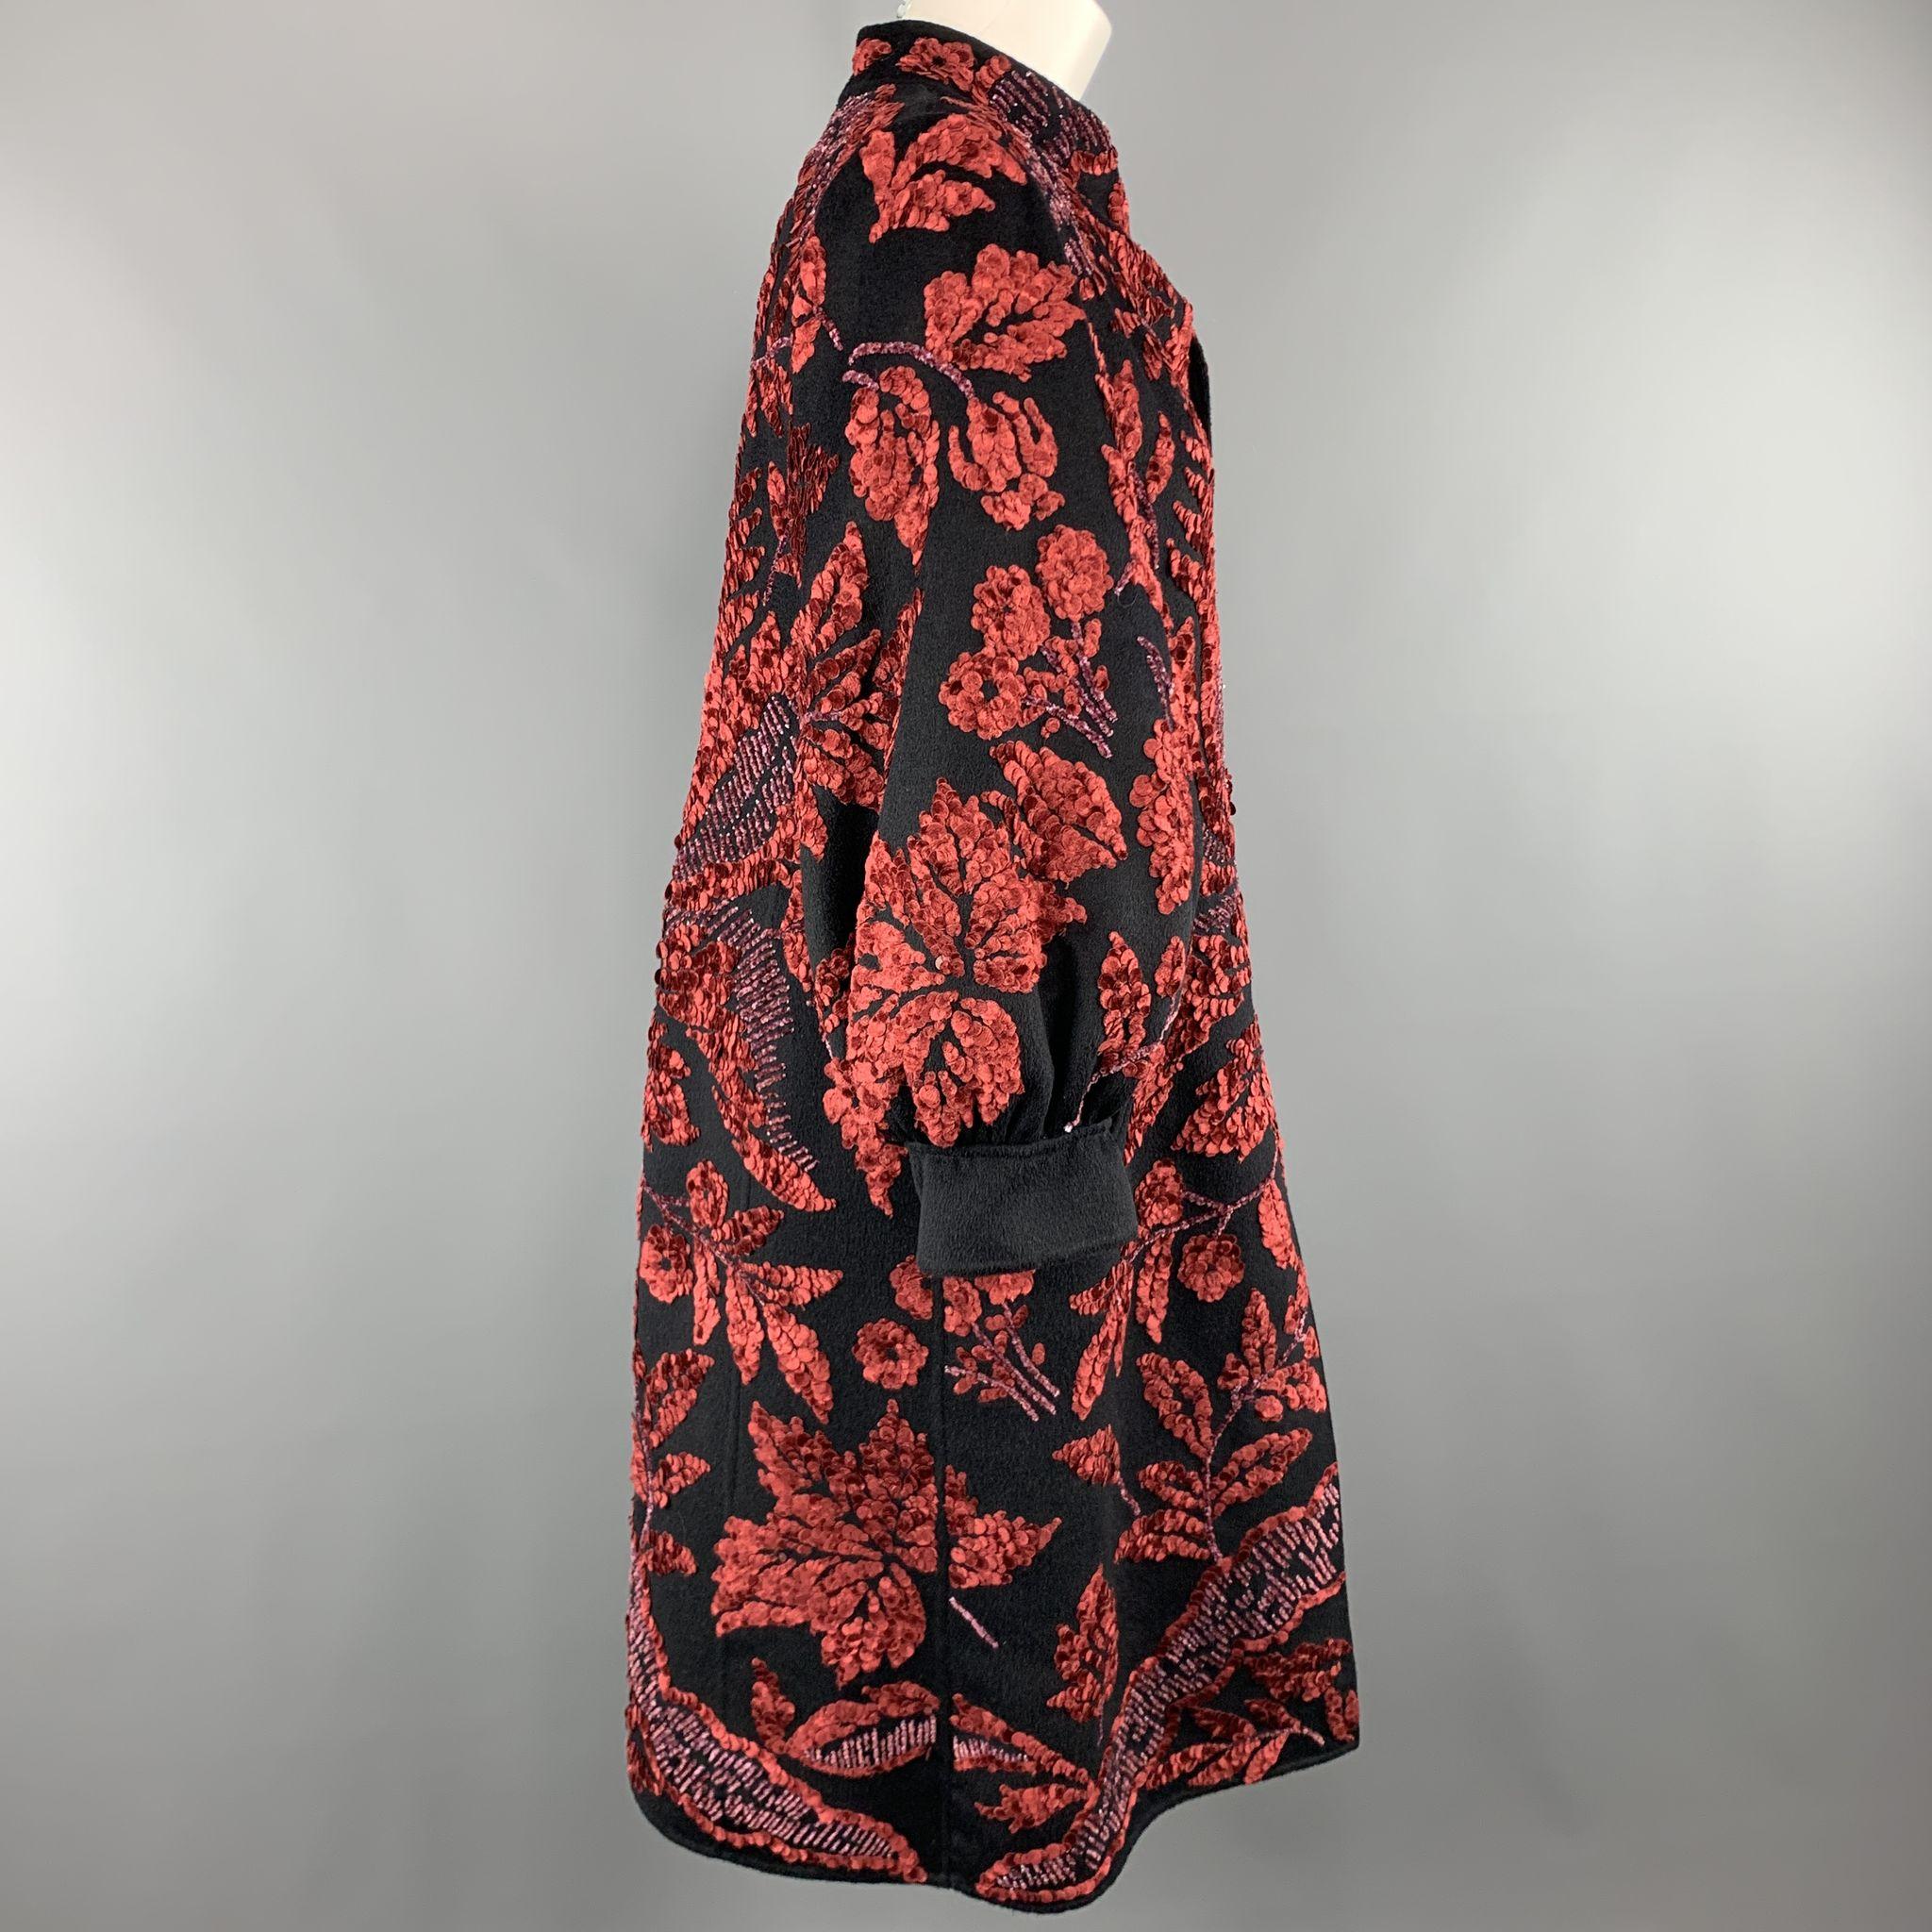 OSCAR DE LA RENTA Size 8 Black & Red Velvet Sequin Brocade Balloon Sleeve Coat 1